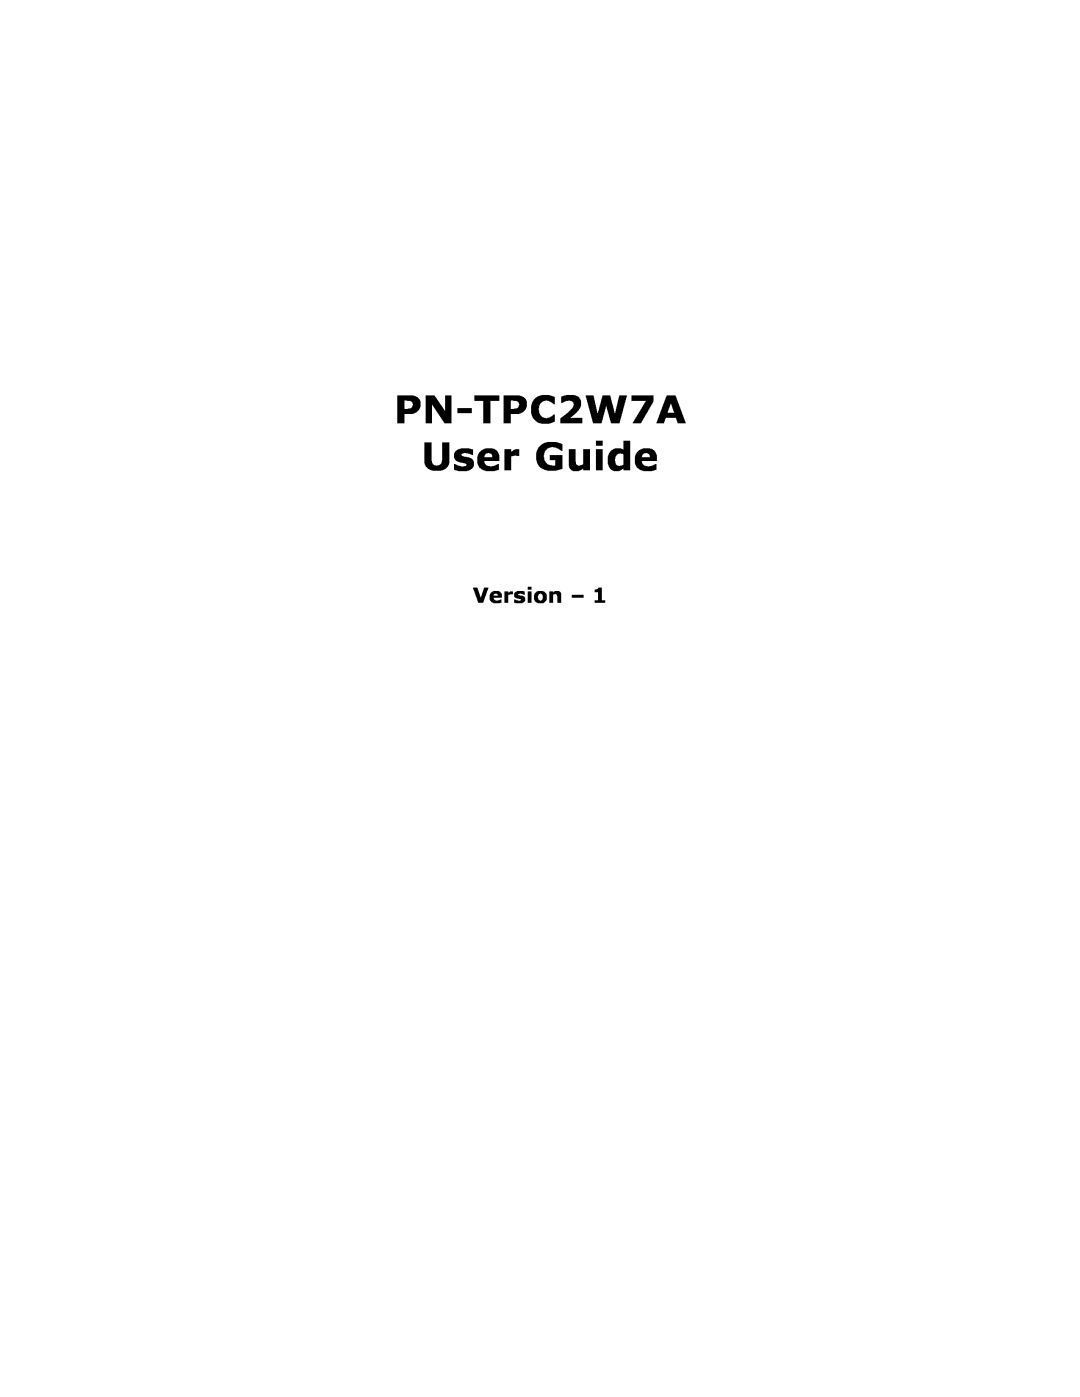 Sharp PNTPC2W7A manual PN-TPC2W7A User Guide, Version 